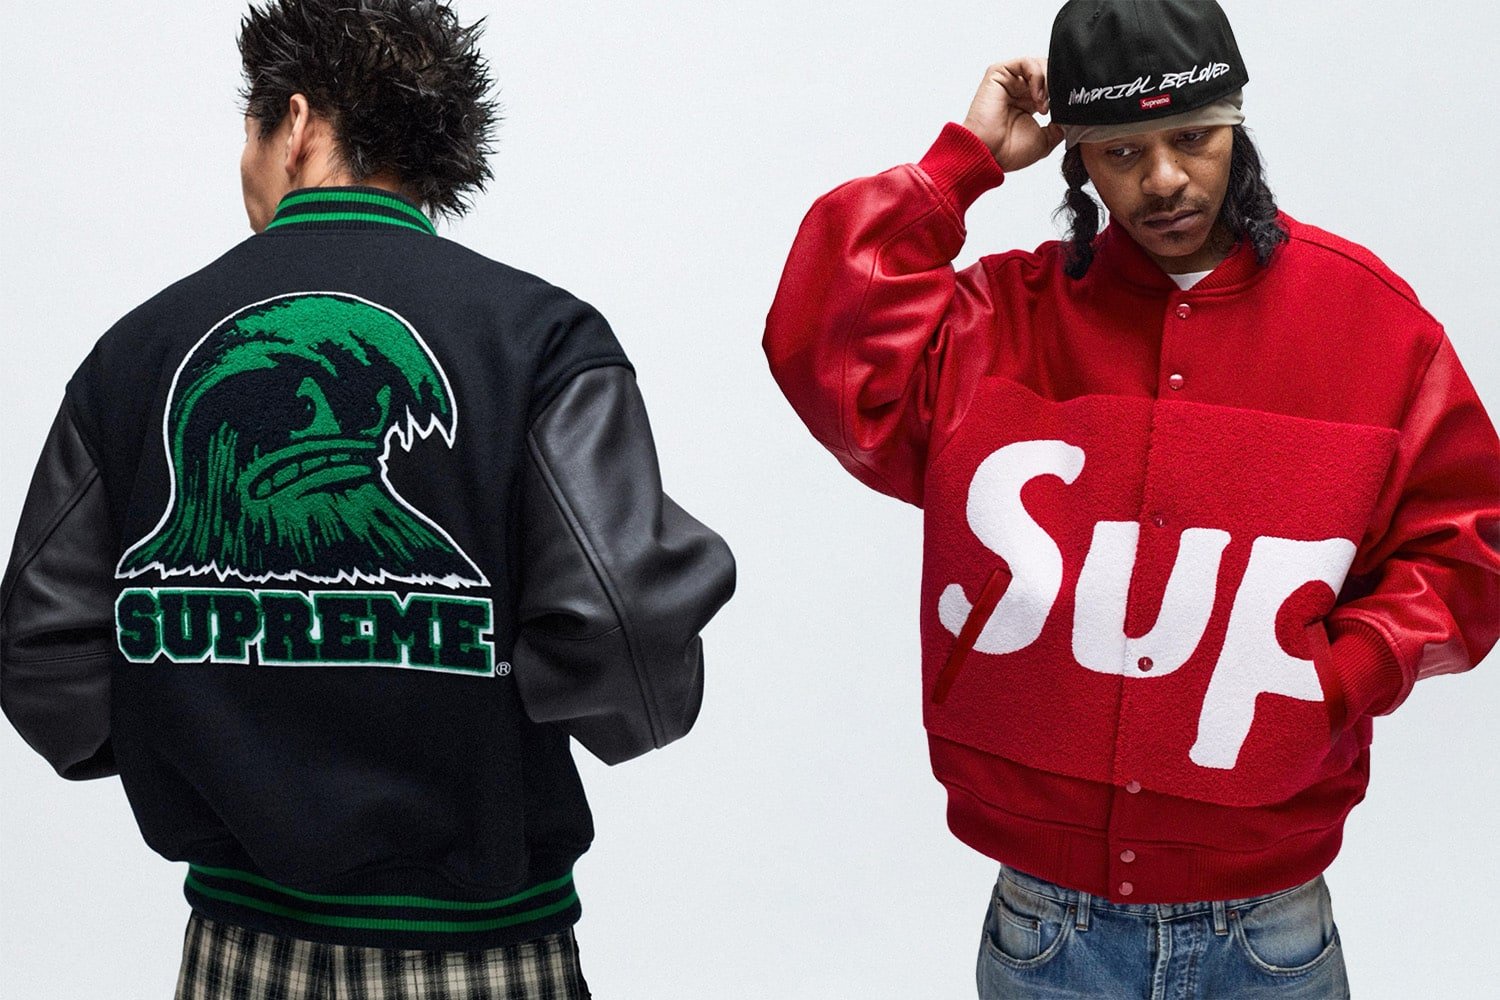 Supreme: Legenda streetwearu od kuchni - Wprowadzenie do kultowej marki